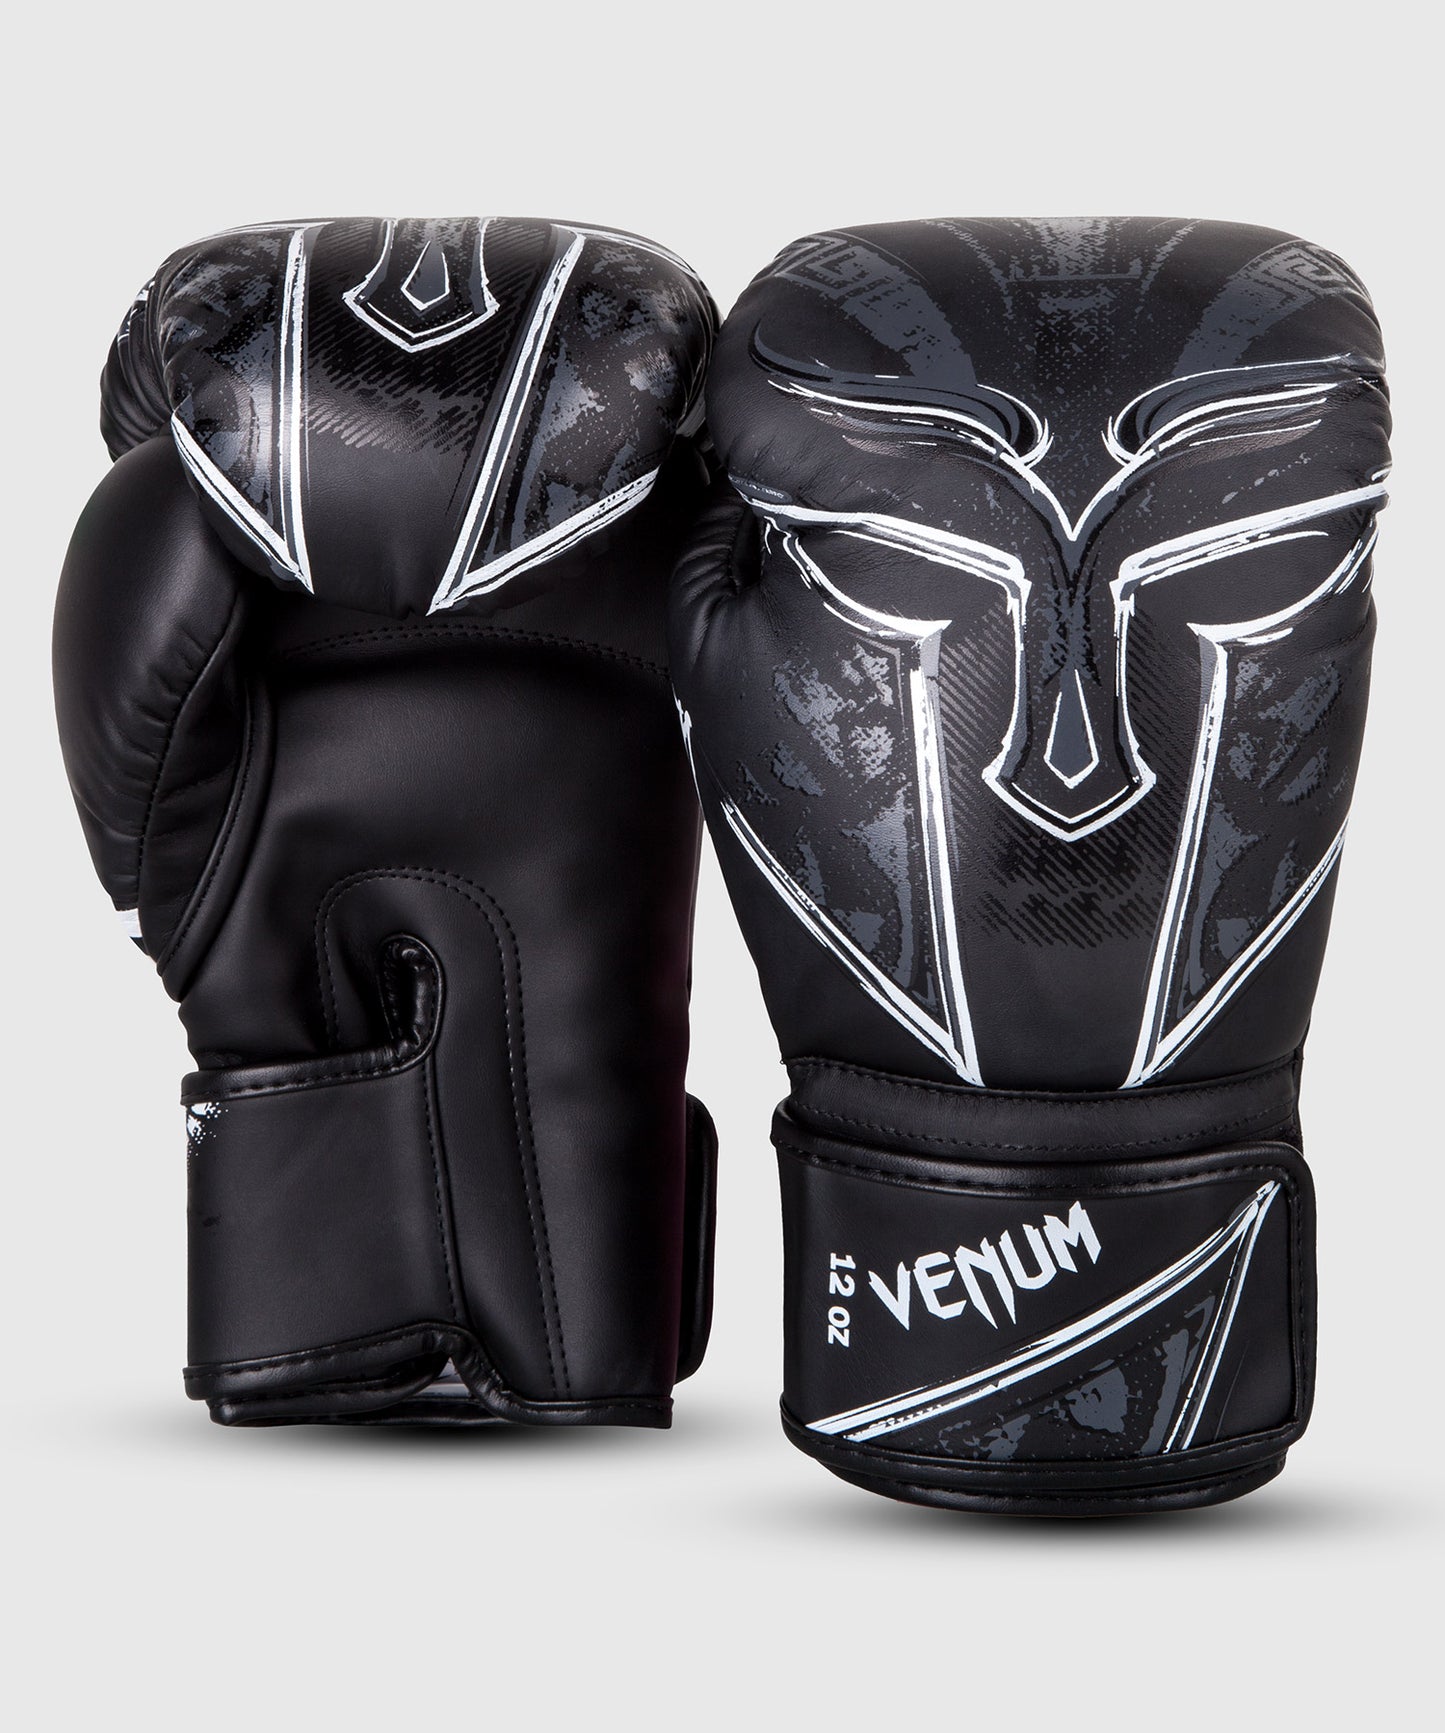 Gants MMA Venum gladiateur 3.0, gants MMA-noir/blanc en cuir PU noir pour  sparryngs, entraînement au combat - AliExpress